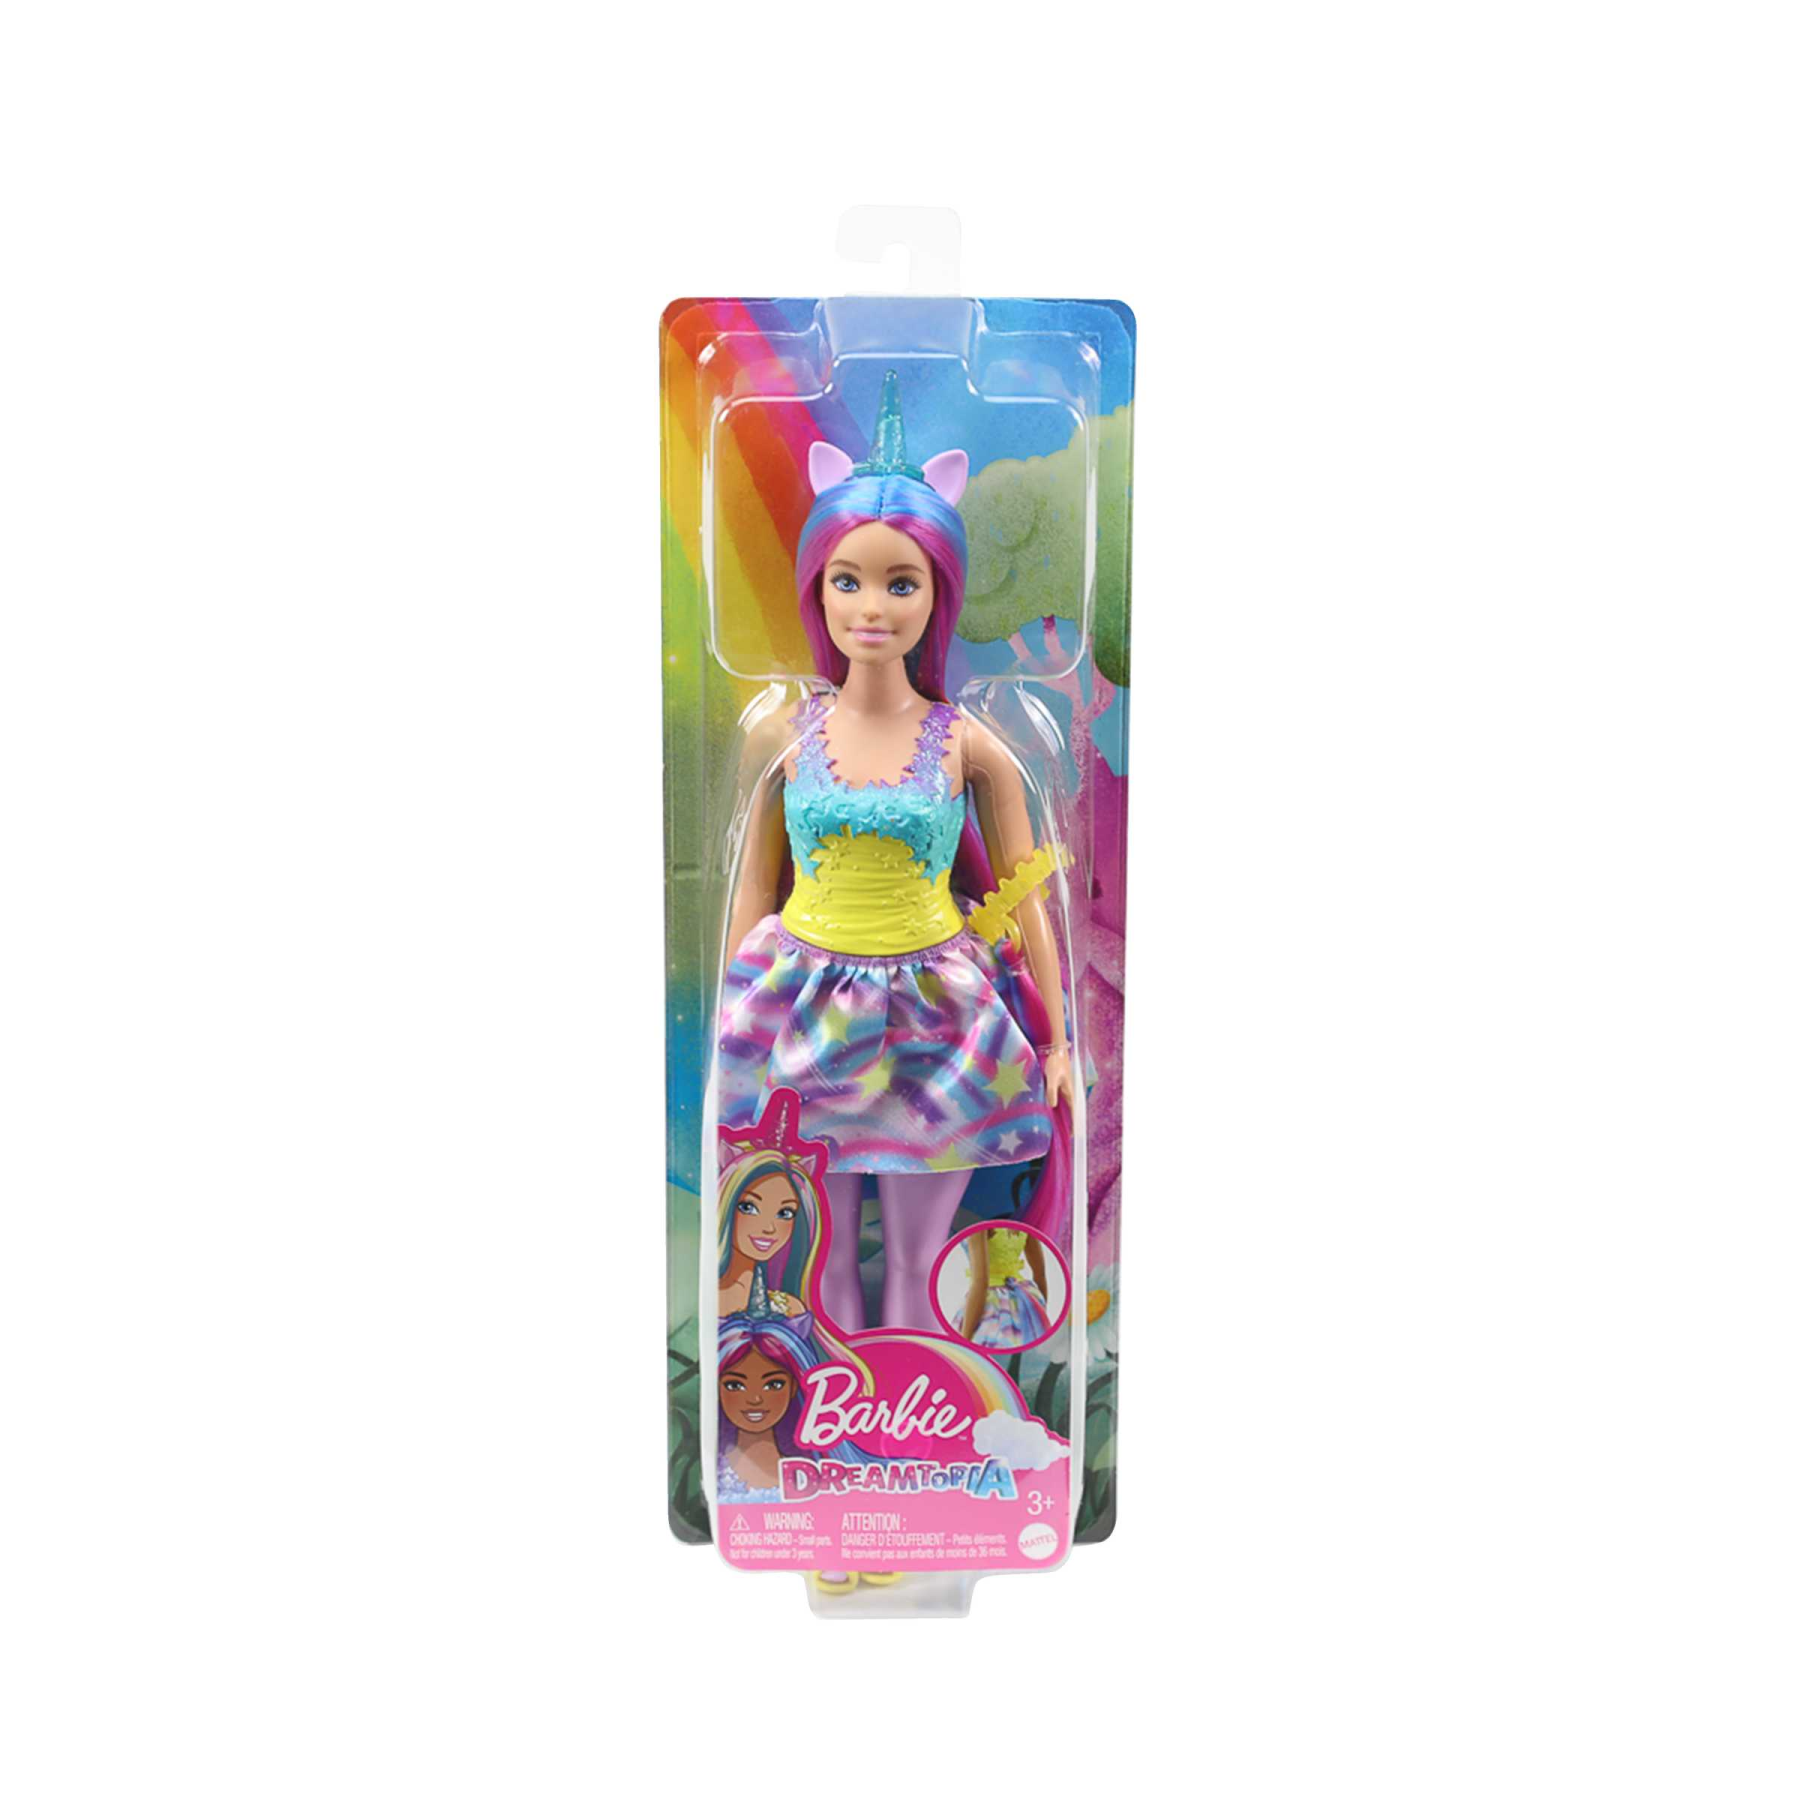 Barbie - dreamtopia unicorno bambola curvy, capelli blu e viola con gonna, coda e cerchietto da unicorno rimovibili, giocattolo per bambini, 3+ anni, hgr20 - Barbie